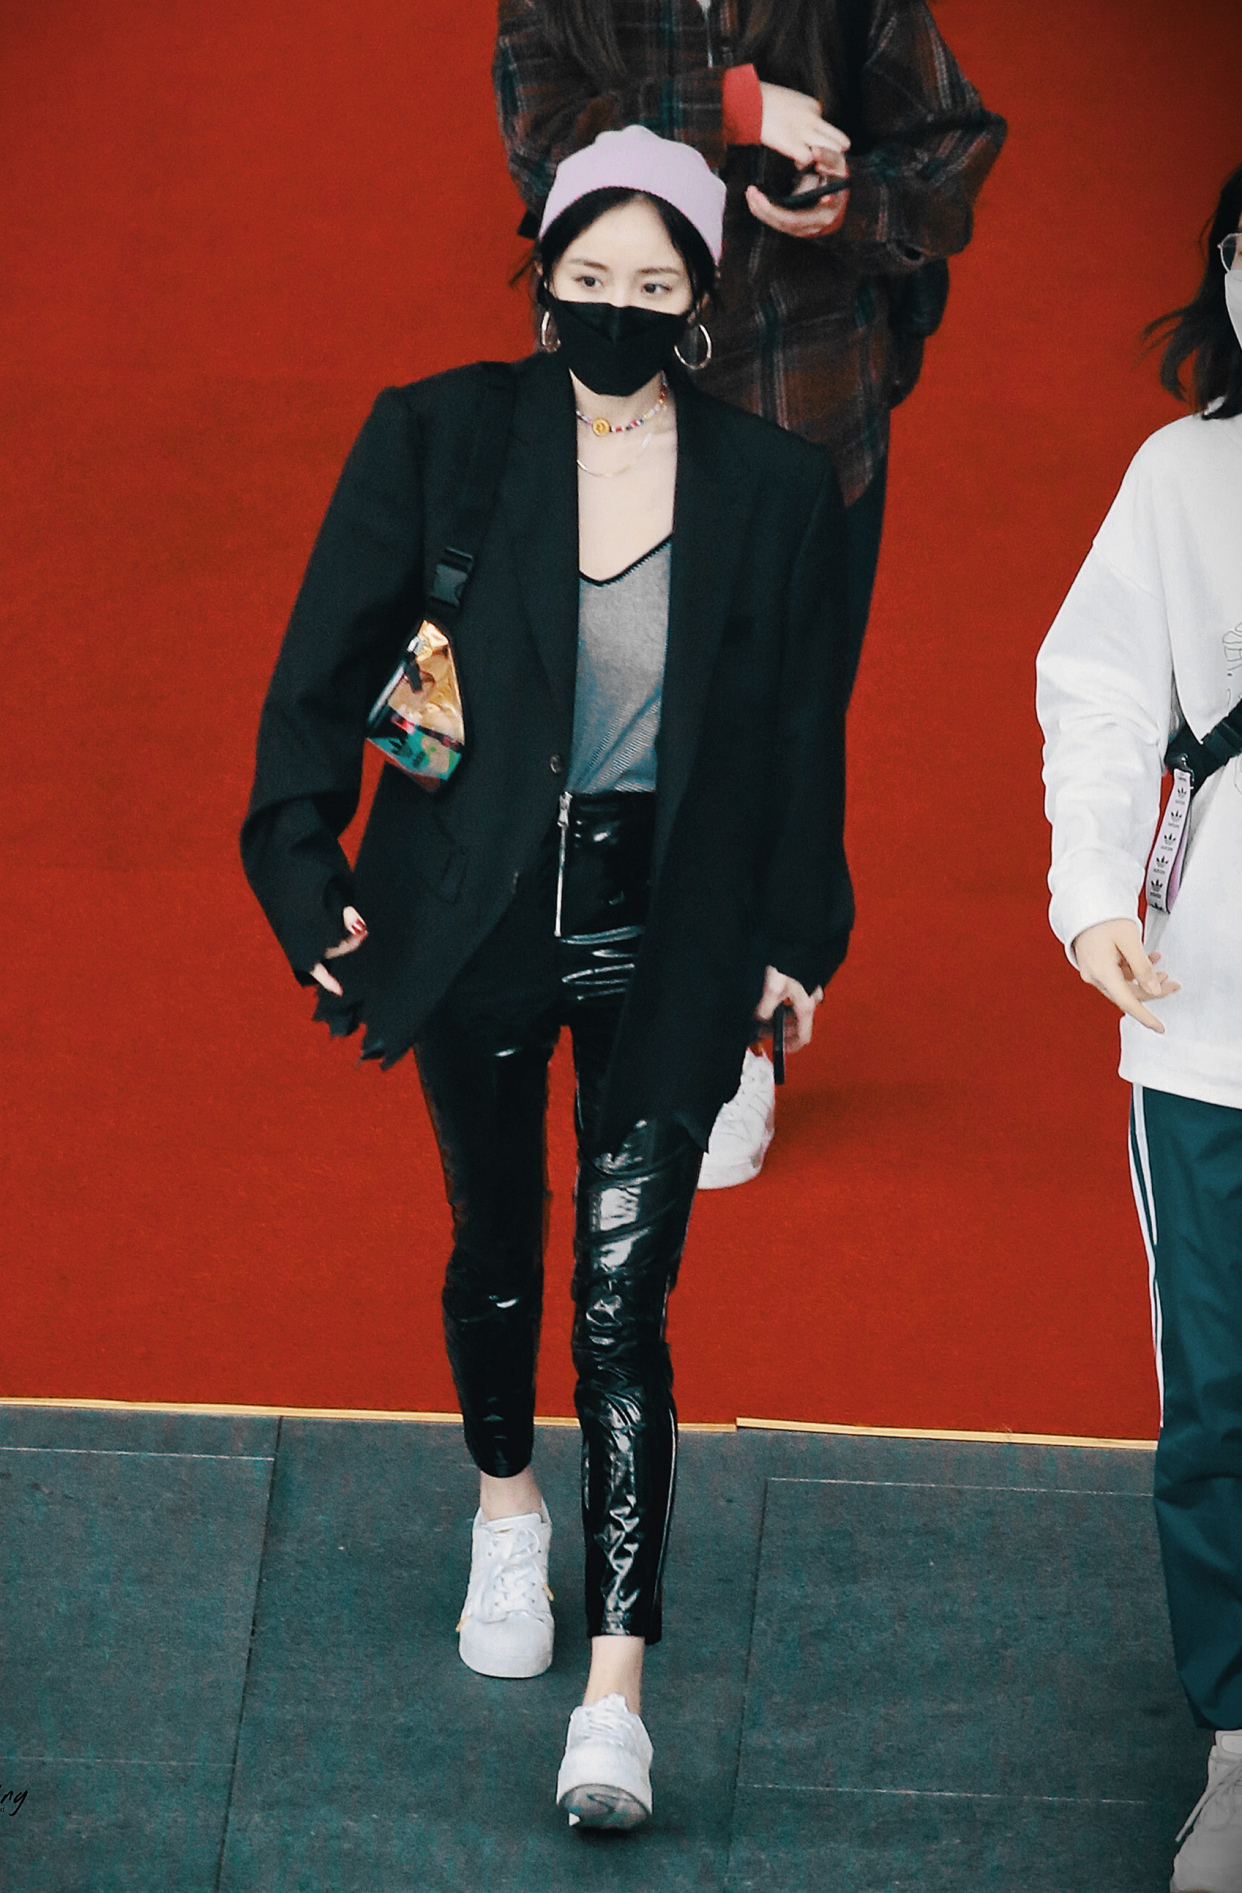 杨幂机场街拍,黑色西服搭配黑色漆面皮裤,名副其实的时尚女王